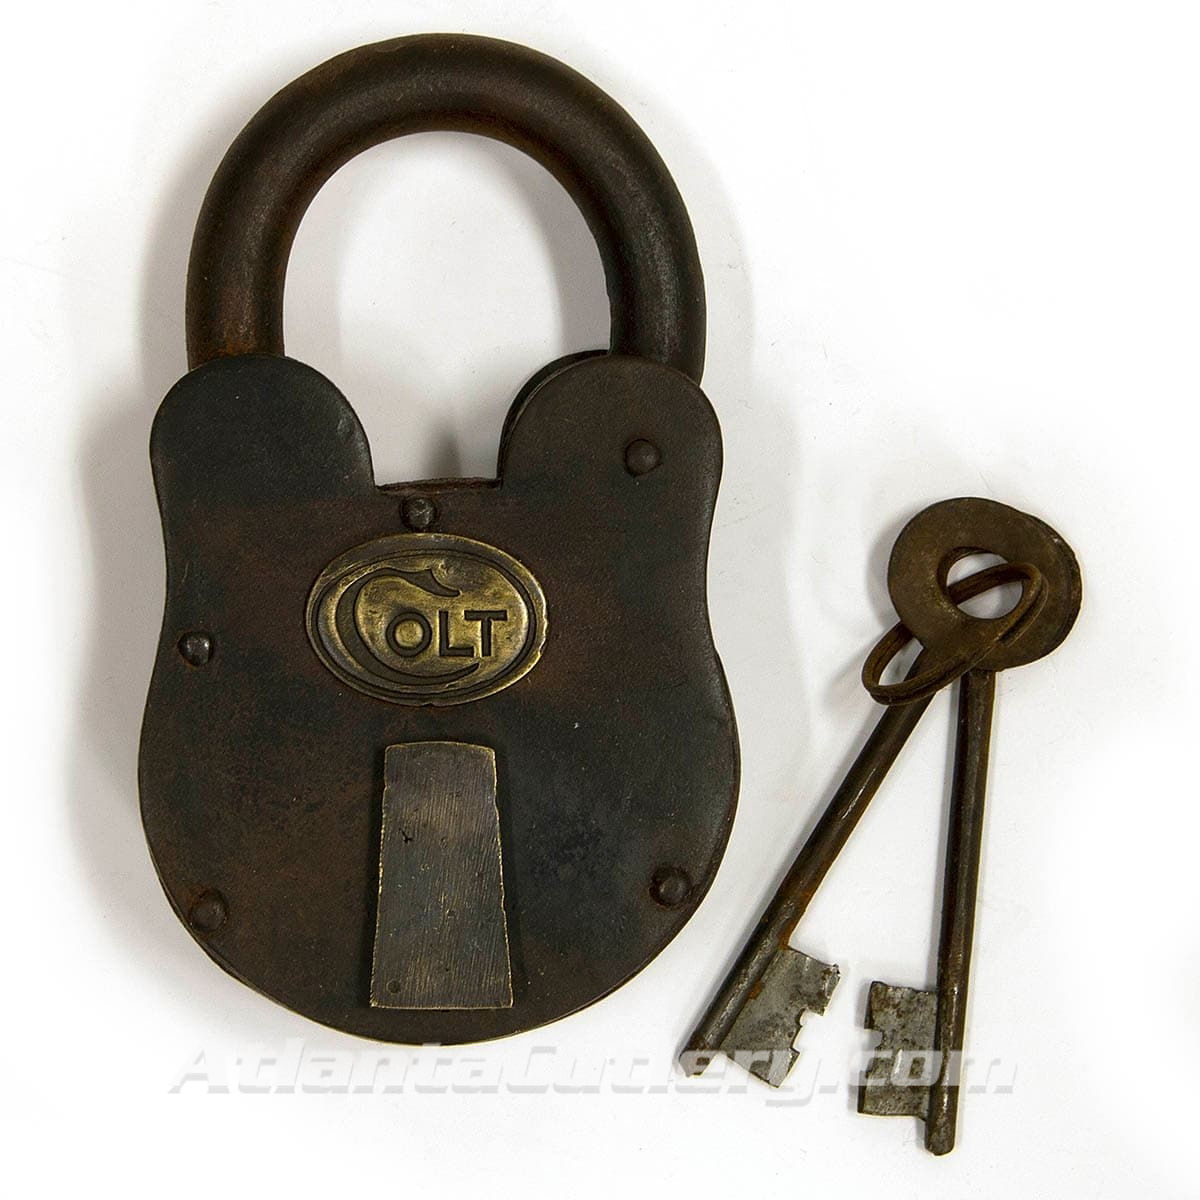 Large Iron Colt Padlock with keys